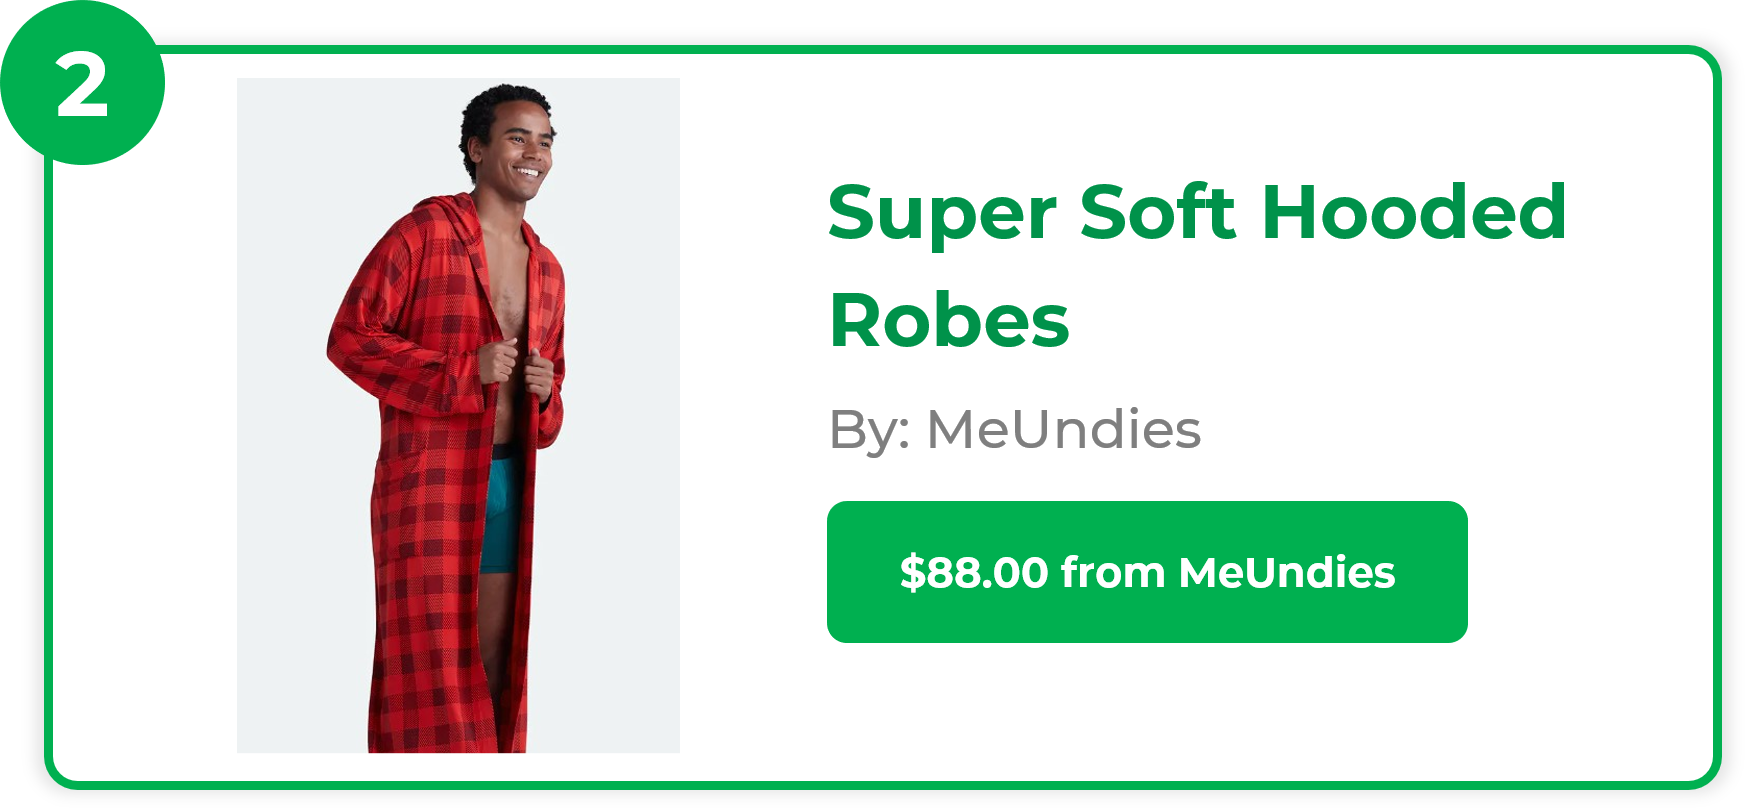 Super Soft Hooded Robes - MeUndies